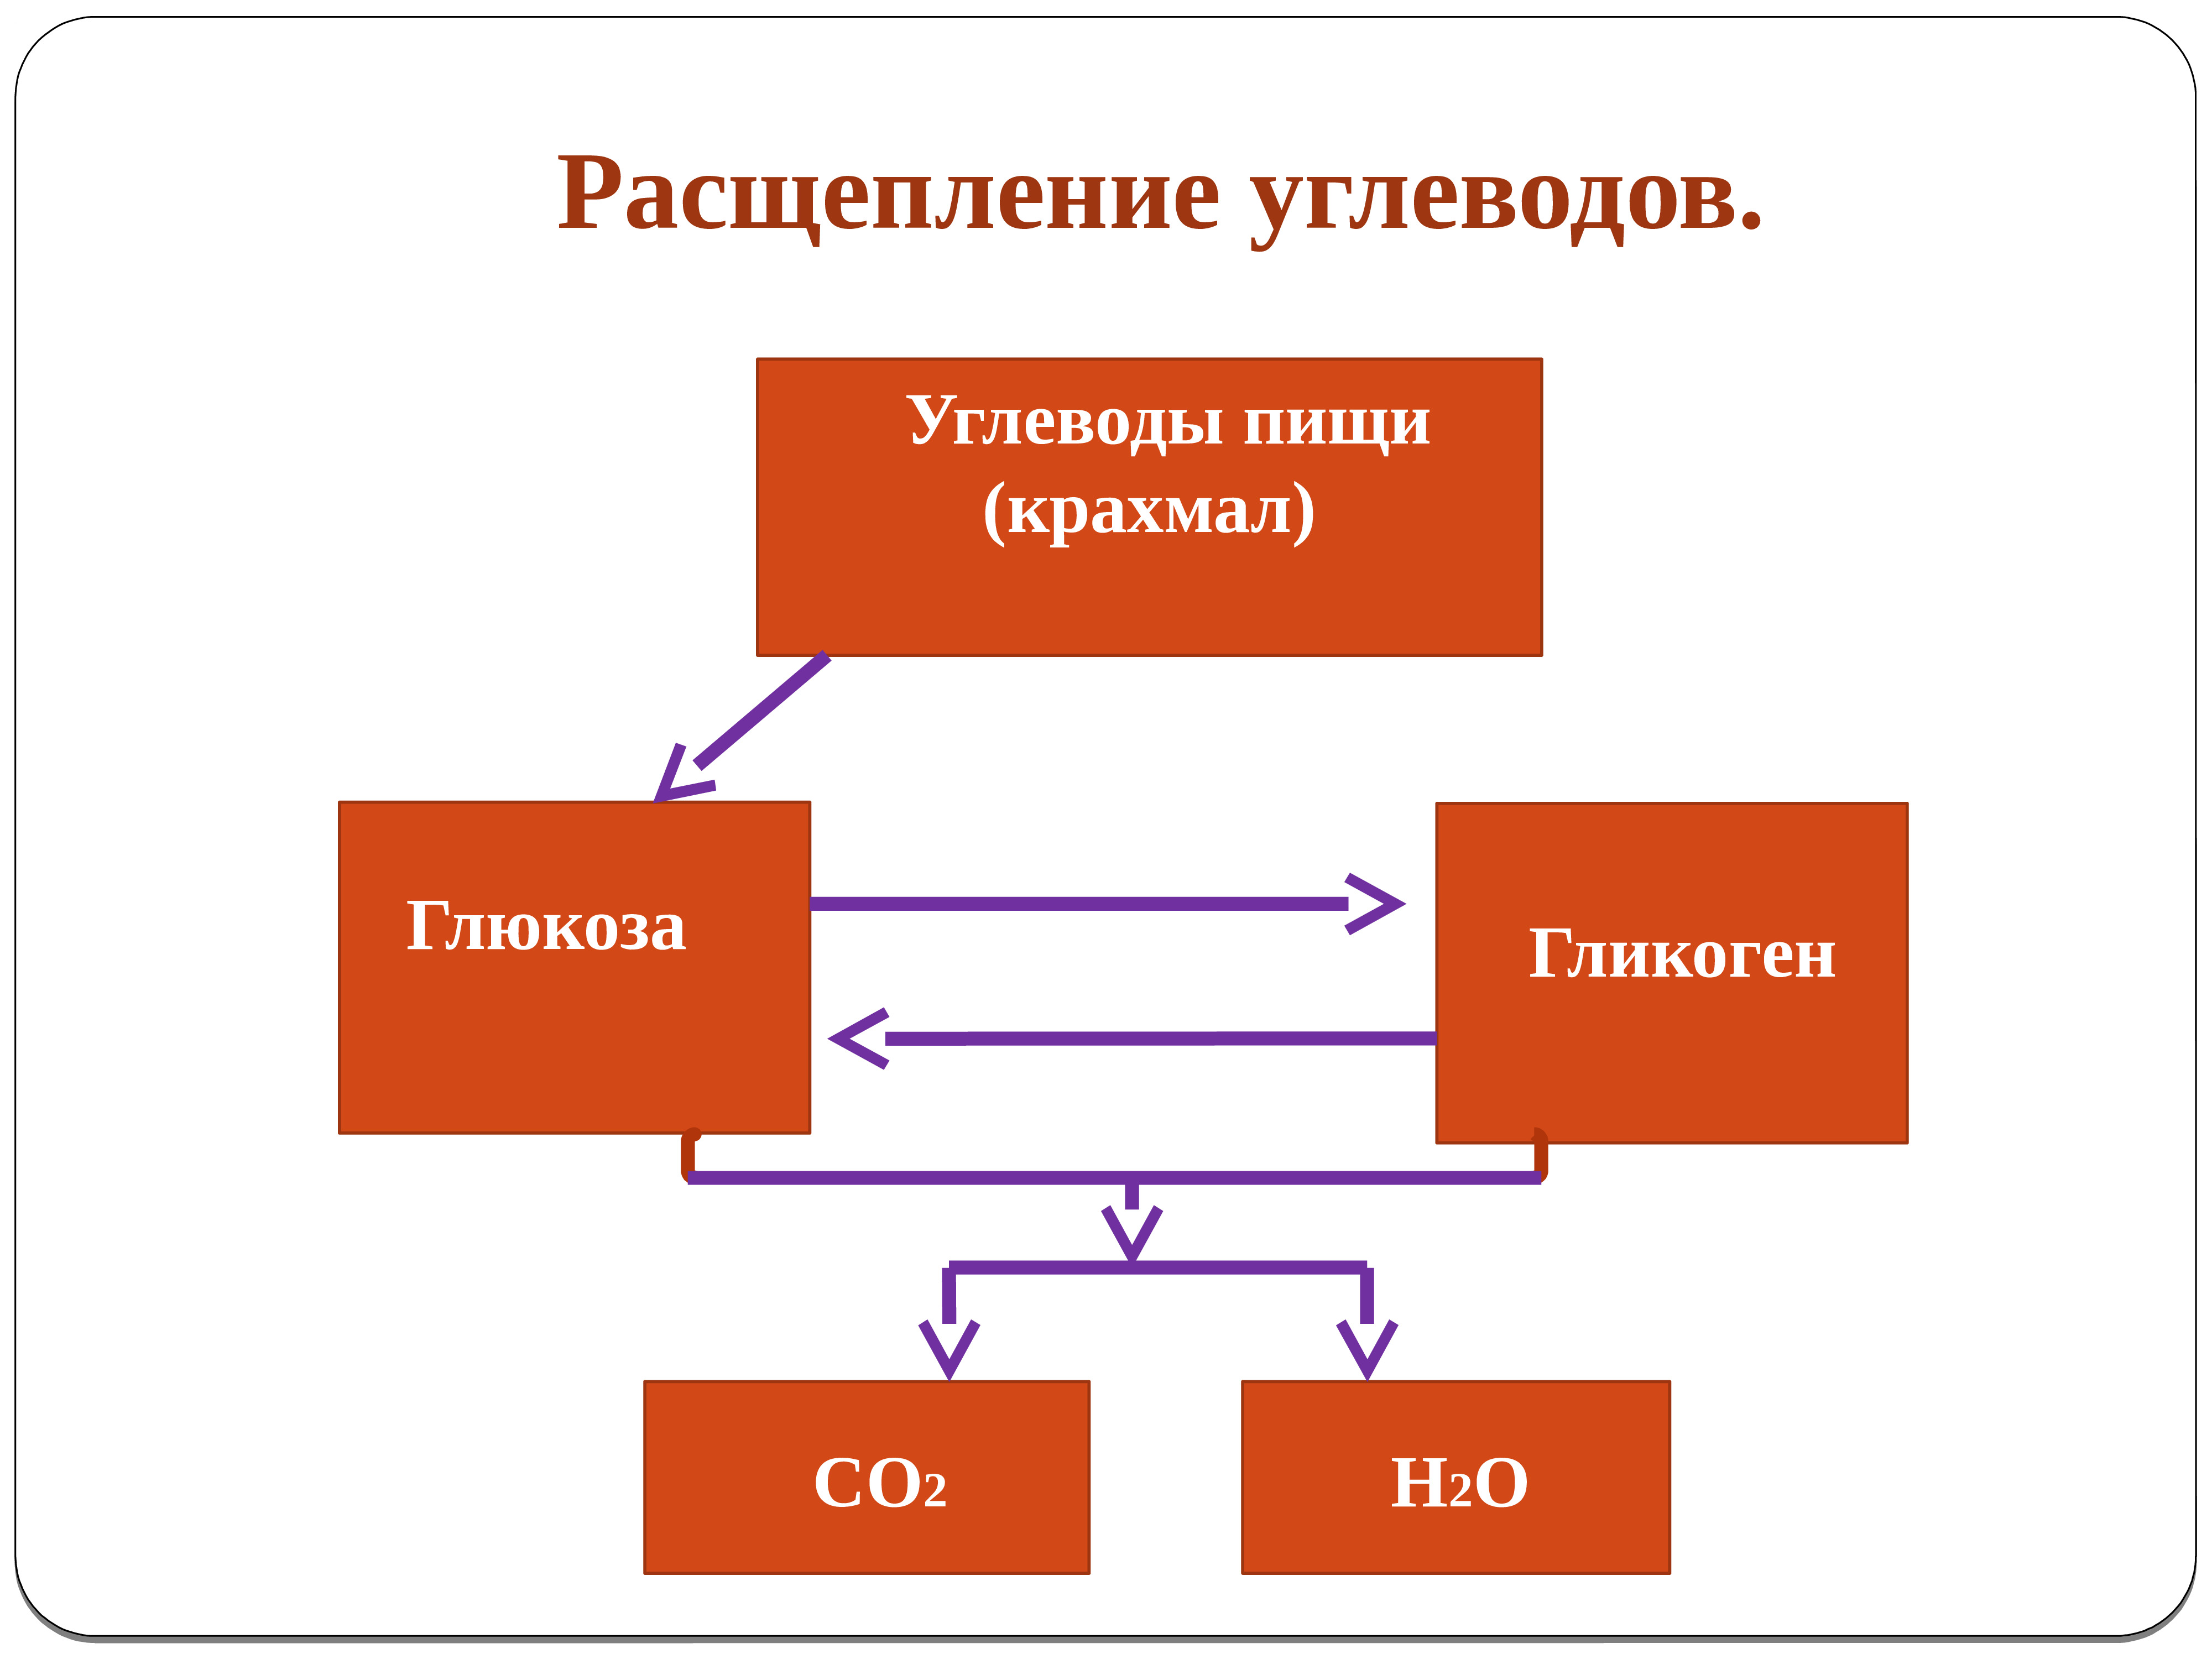 Продукты распада воды. Схема расщепления углеводов в организме человека. Расщепление сложных углеводов. Сложные углеводы расщепляются на. Схема процесса расщепления углеводов.